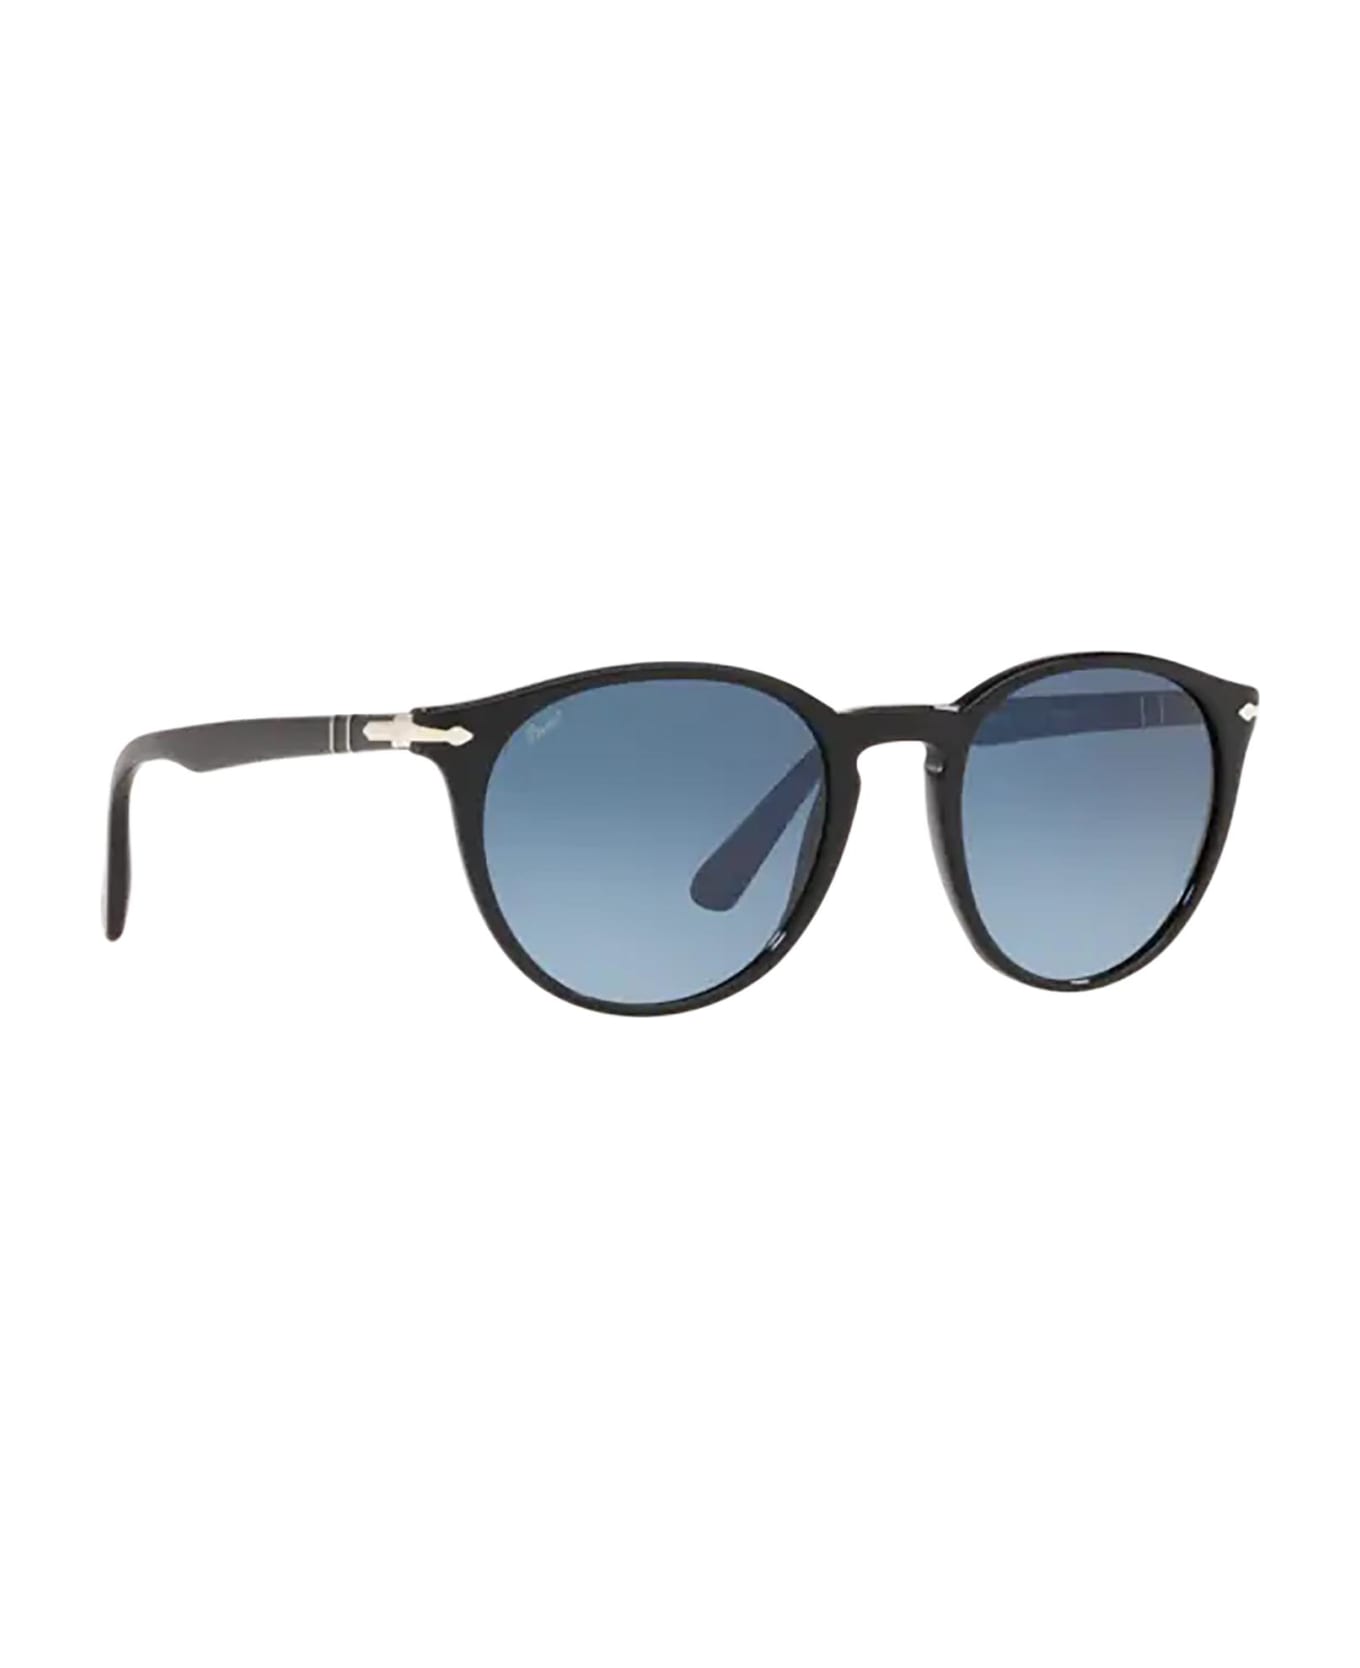 Persol Po3152s Black Sunglasses - Black